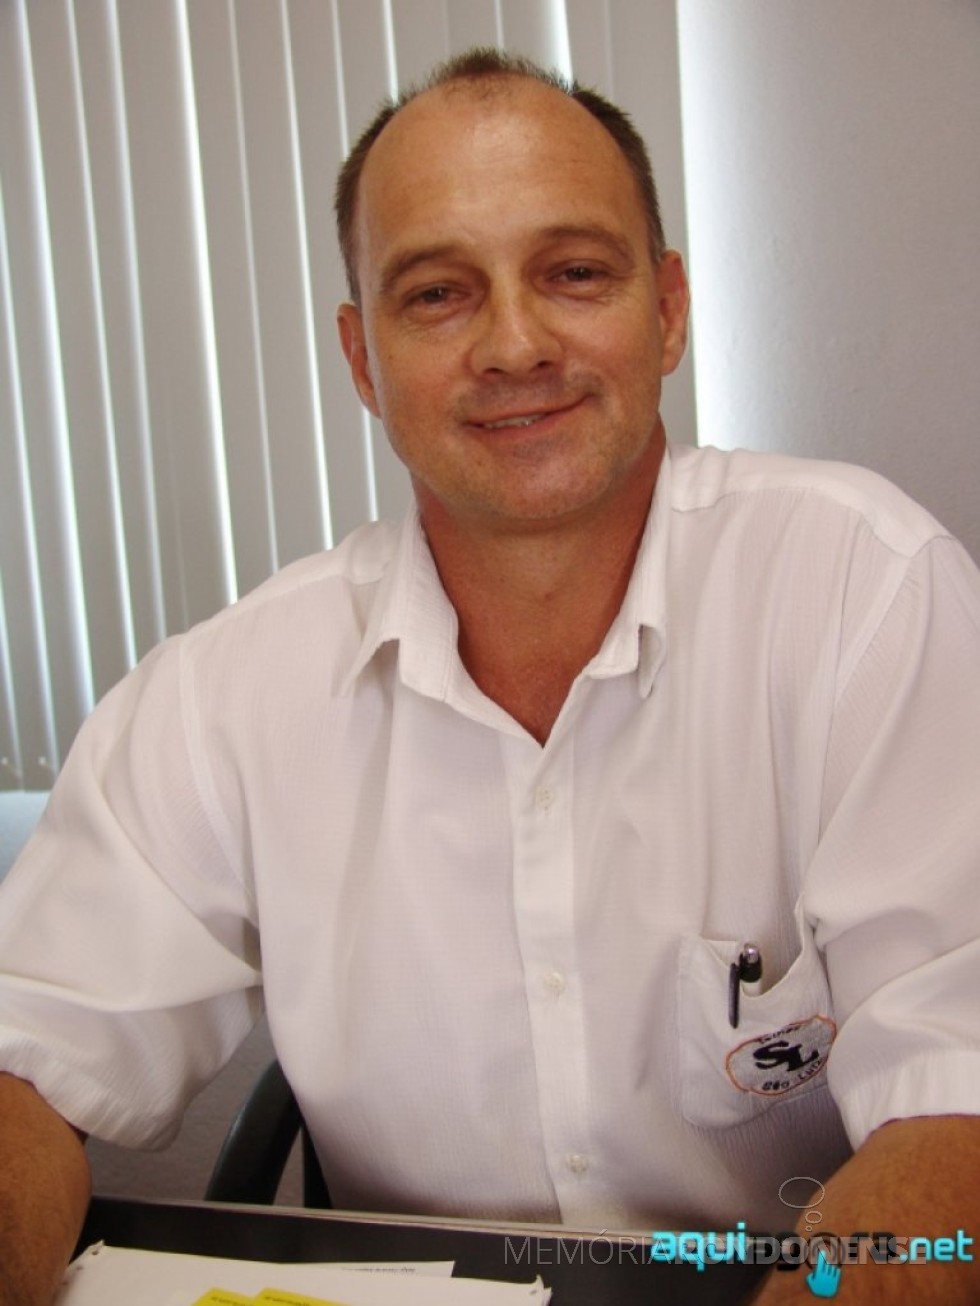 Empresário Reinaldo Scherer, de Pato Bragado, que assumiu em 20 de maio de 2015, a coordenadoria regional da FIEP.
Imagem: Acervo AquiAgora.net
- FOTO 13 - 